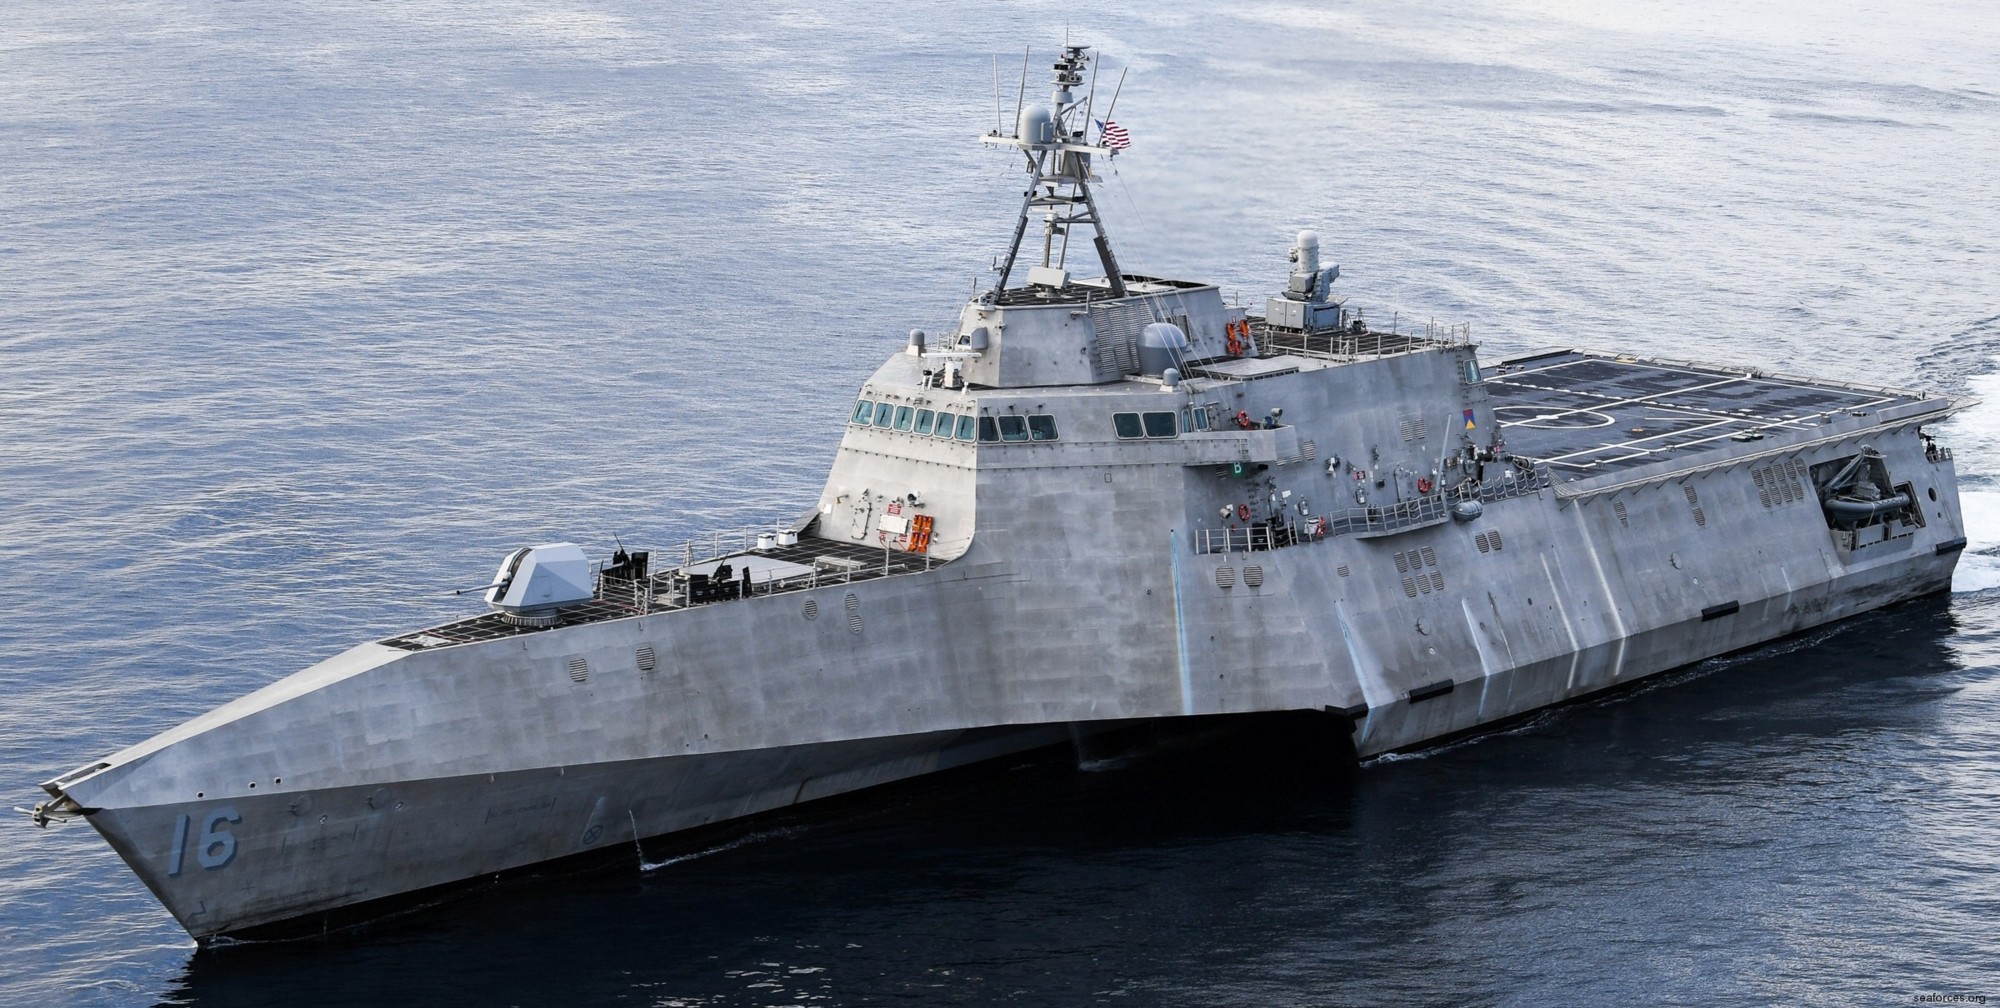 lcs-16 uss tulsa littoral combat ship independence class us navy 17